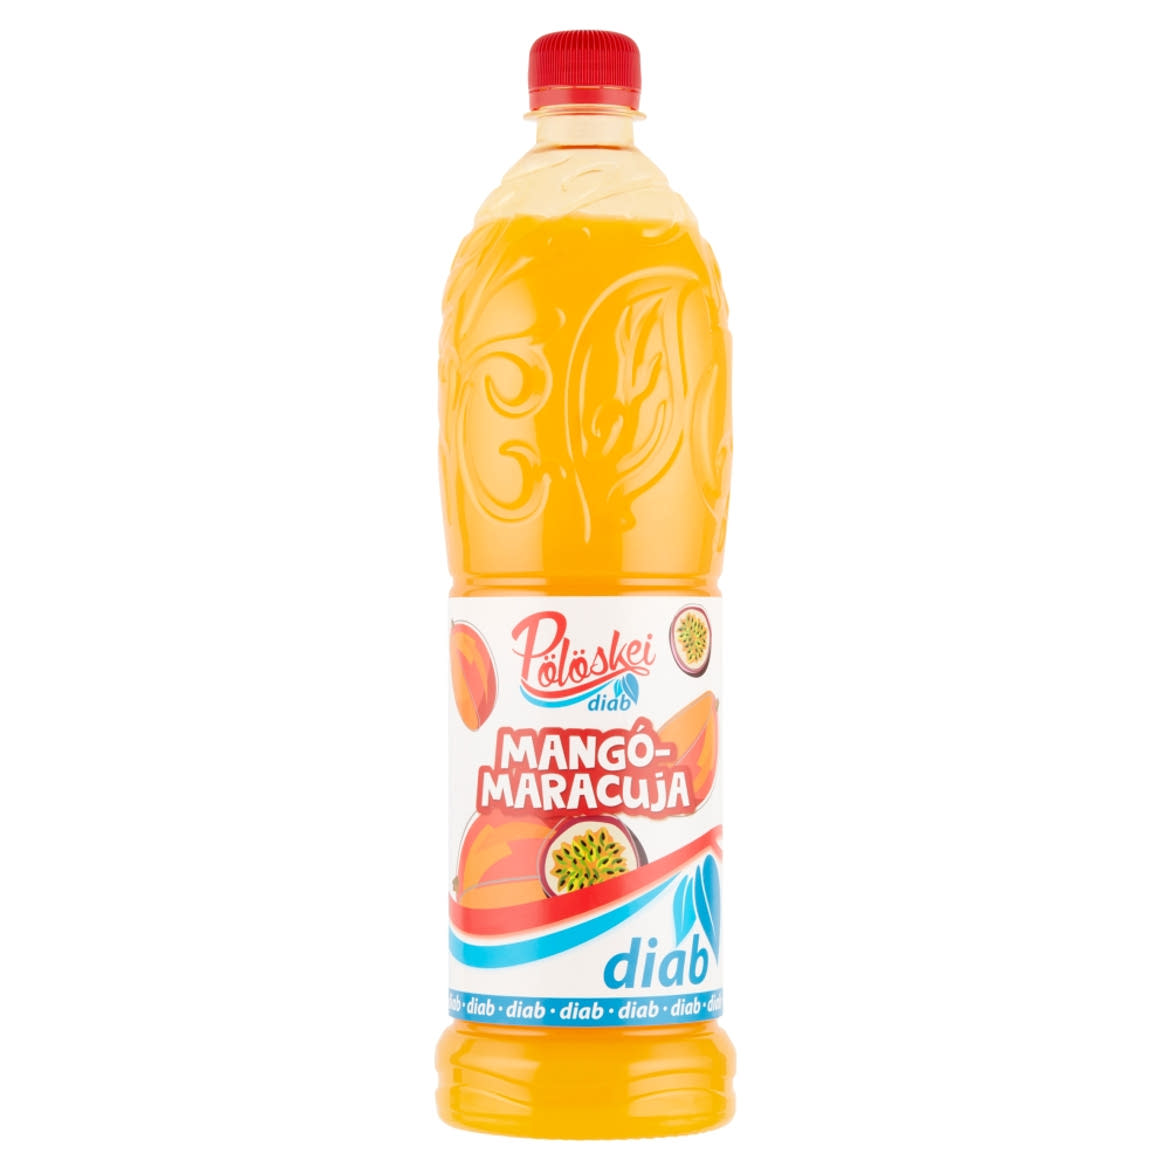 Pölöskei Diab mangó-maracuja ízű szörp édesítőszerekkel